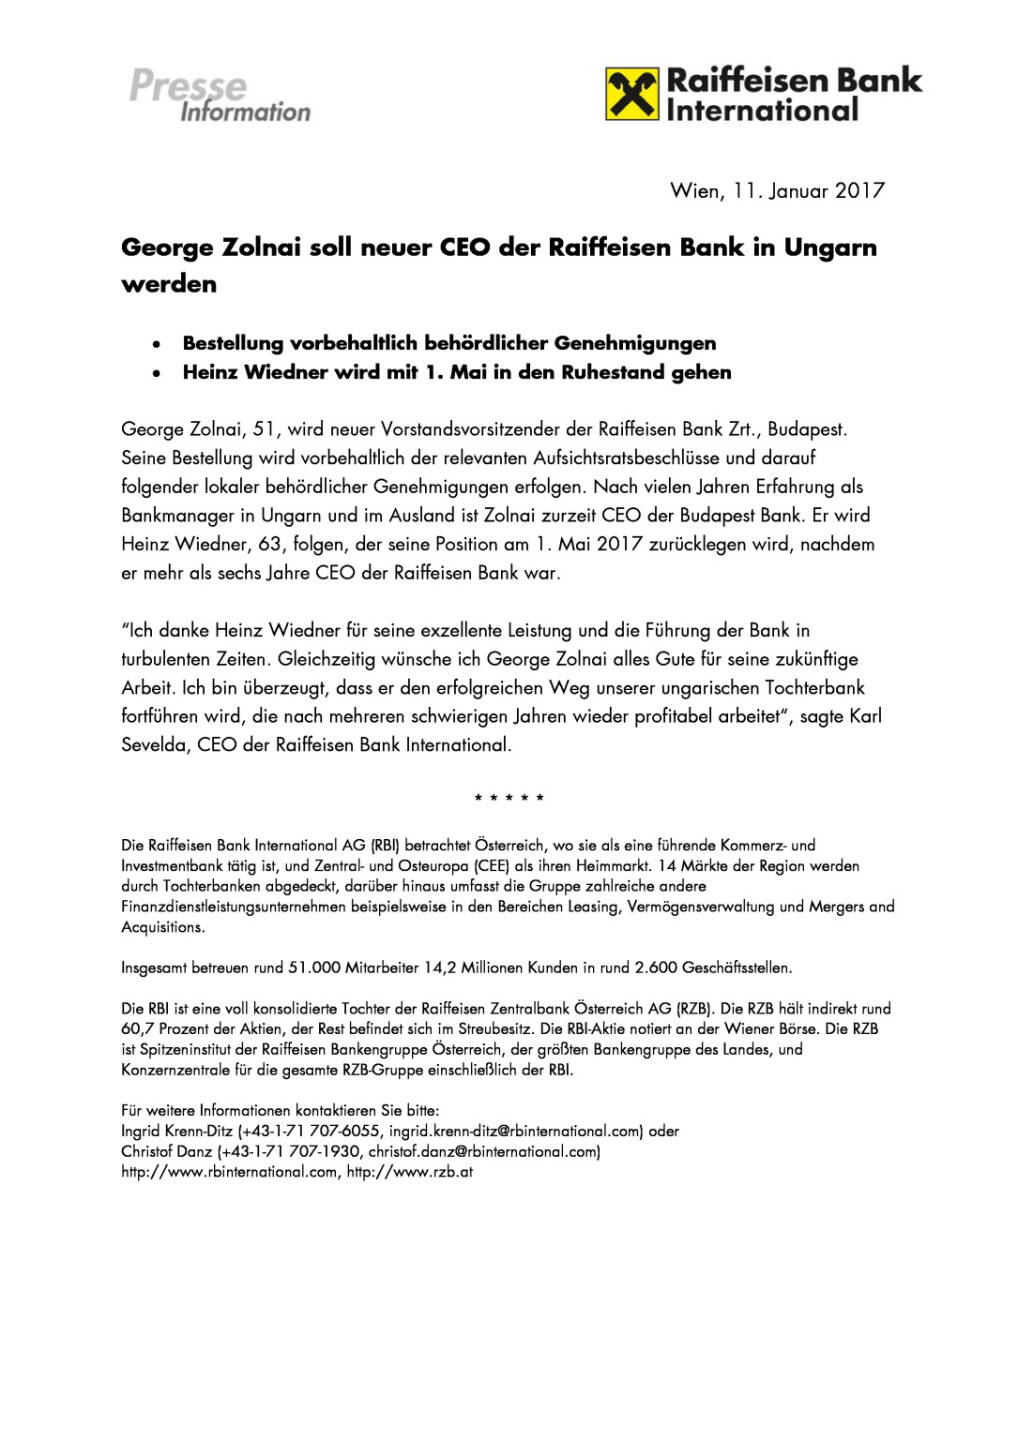 George Zolnai soll neuer CEO der Raiffeisen Bank in Ungarn werden, Seite 1/1, komplettes Dokument unter http://boerse-social.com/static/uploads/file_2051_george_zolnai_soll_neuer_ceo_der_raiffeisen_bank_in_ungarn_werden.pdf